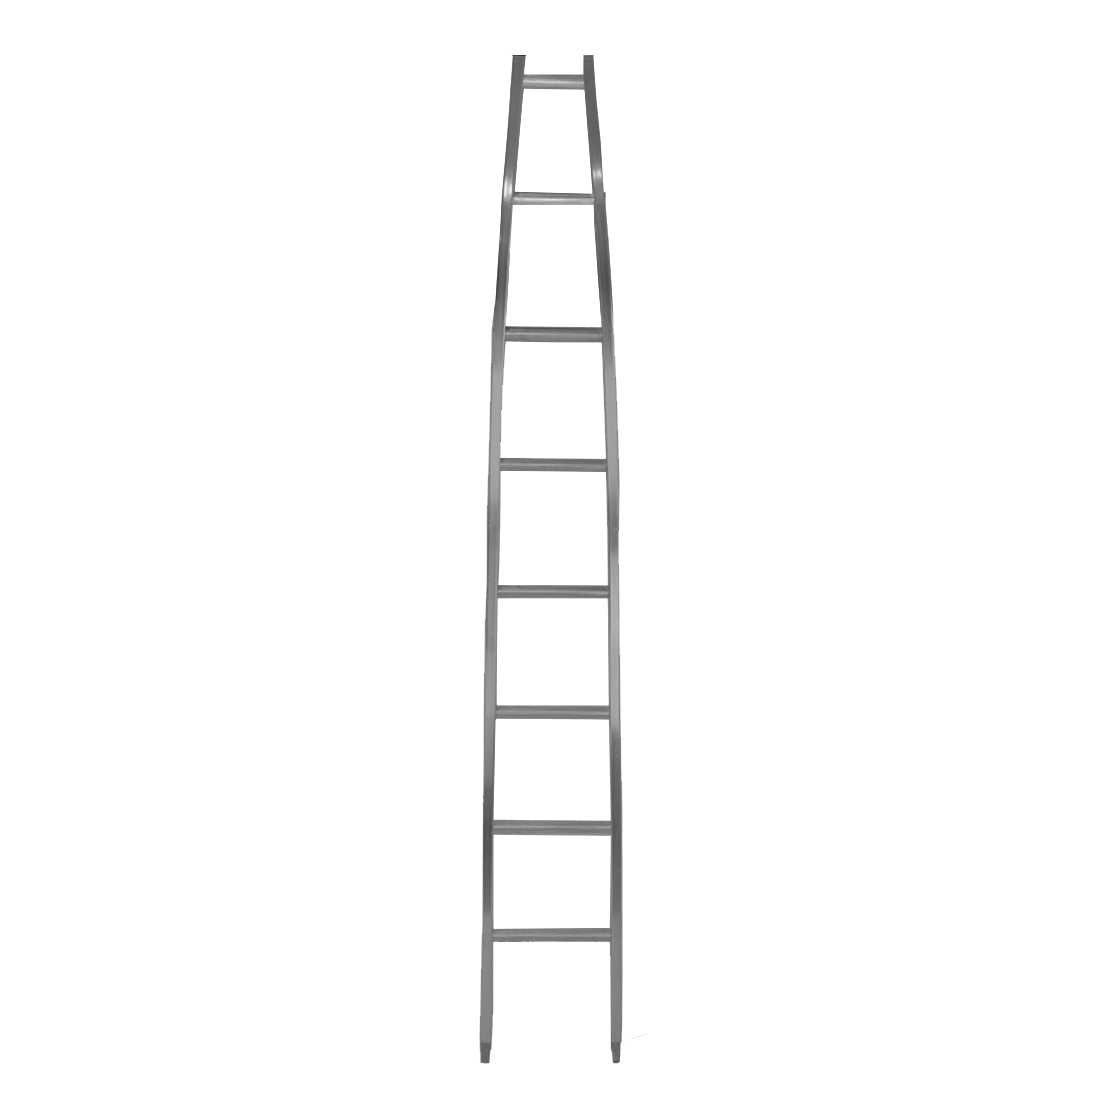 Metallic Ladder Aluminum Open Top Section - 8 Foot Main View